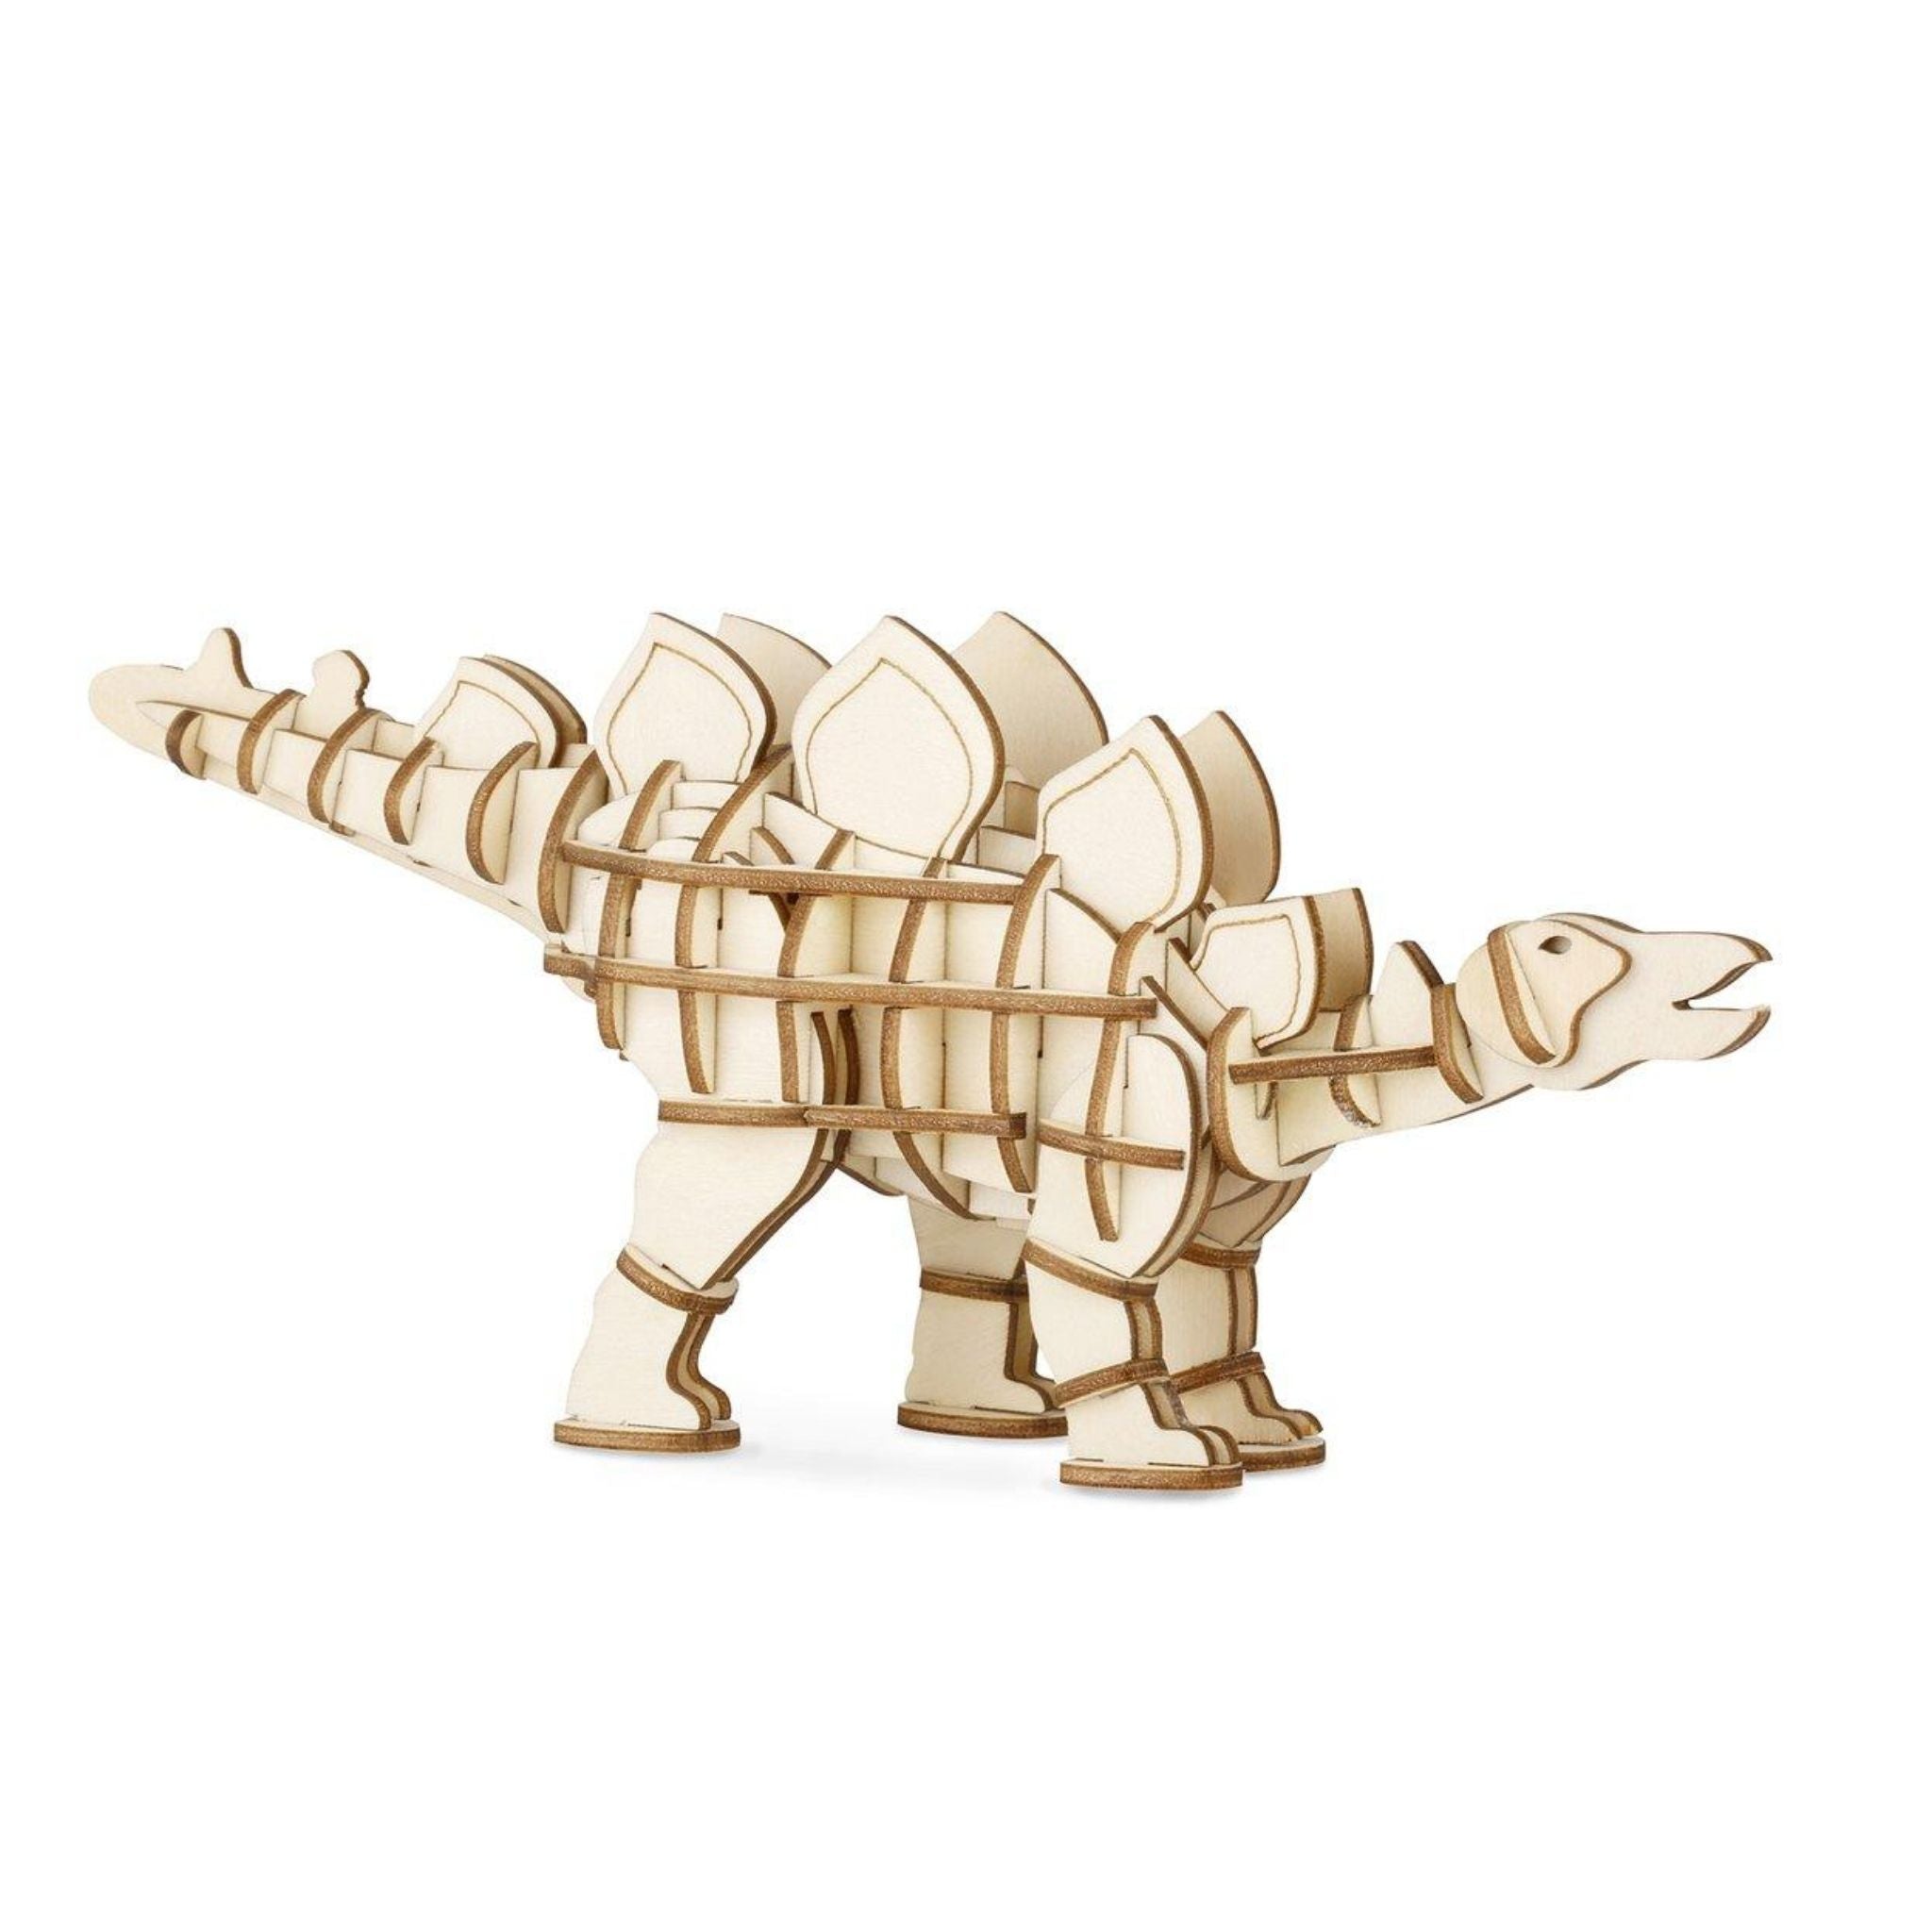 3D Wooden Stegosaurus Puzzle